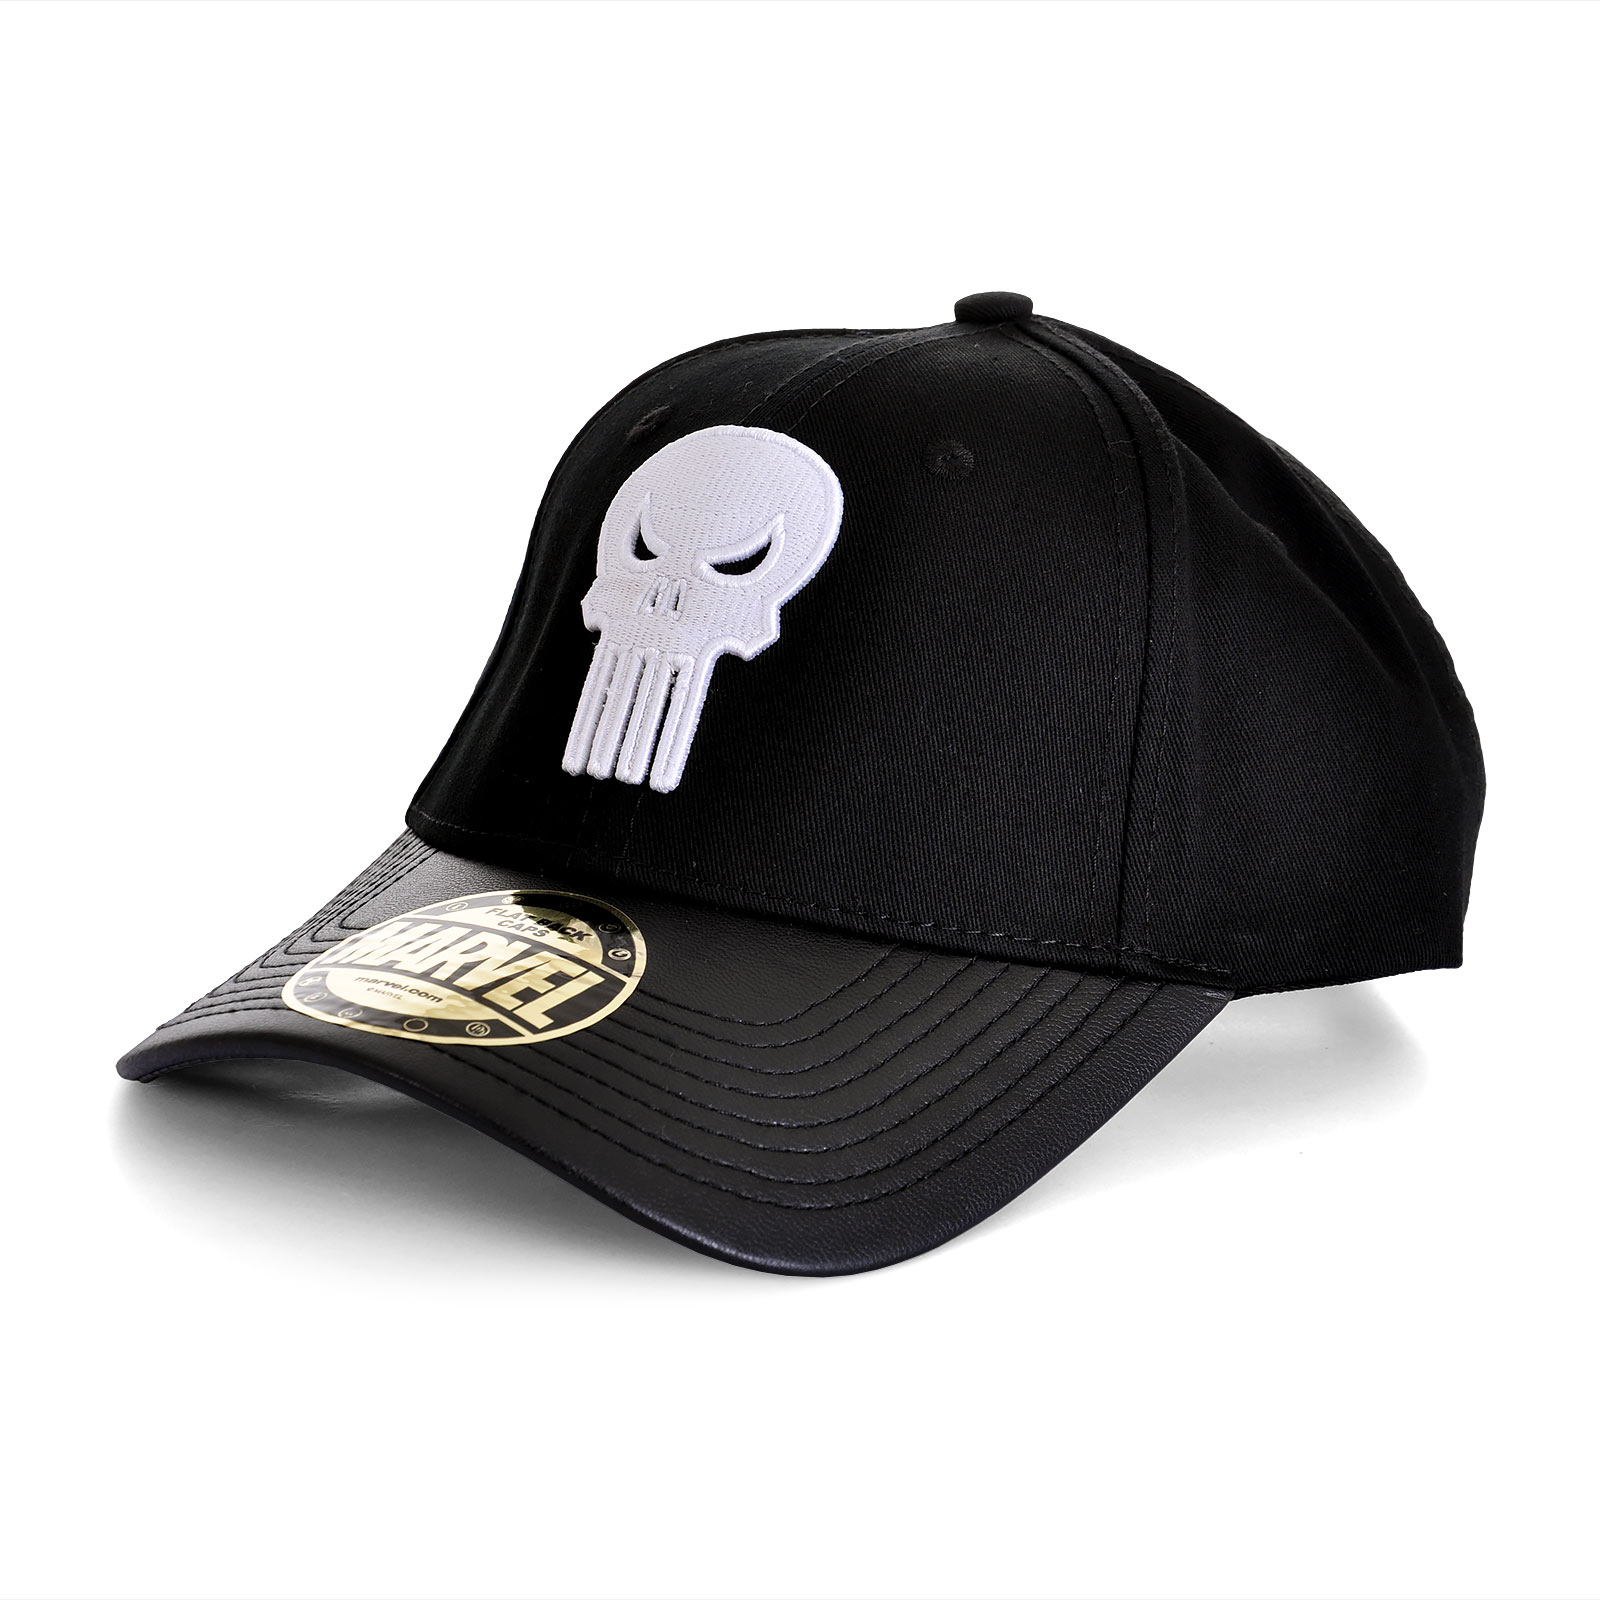 Punisher - Skull Logo Baseball Cap